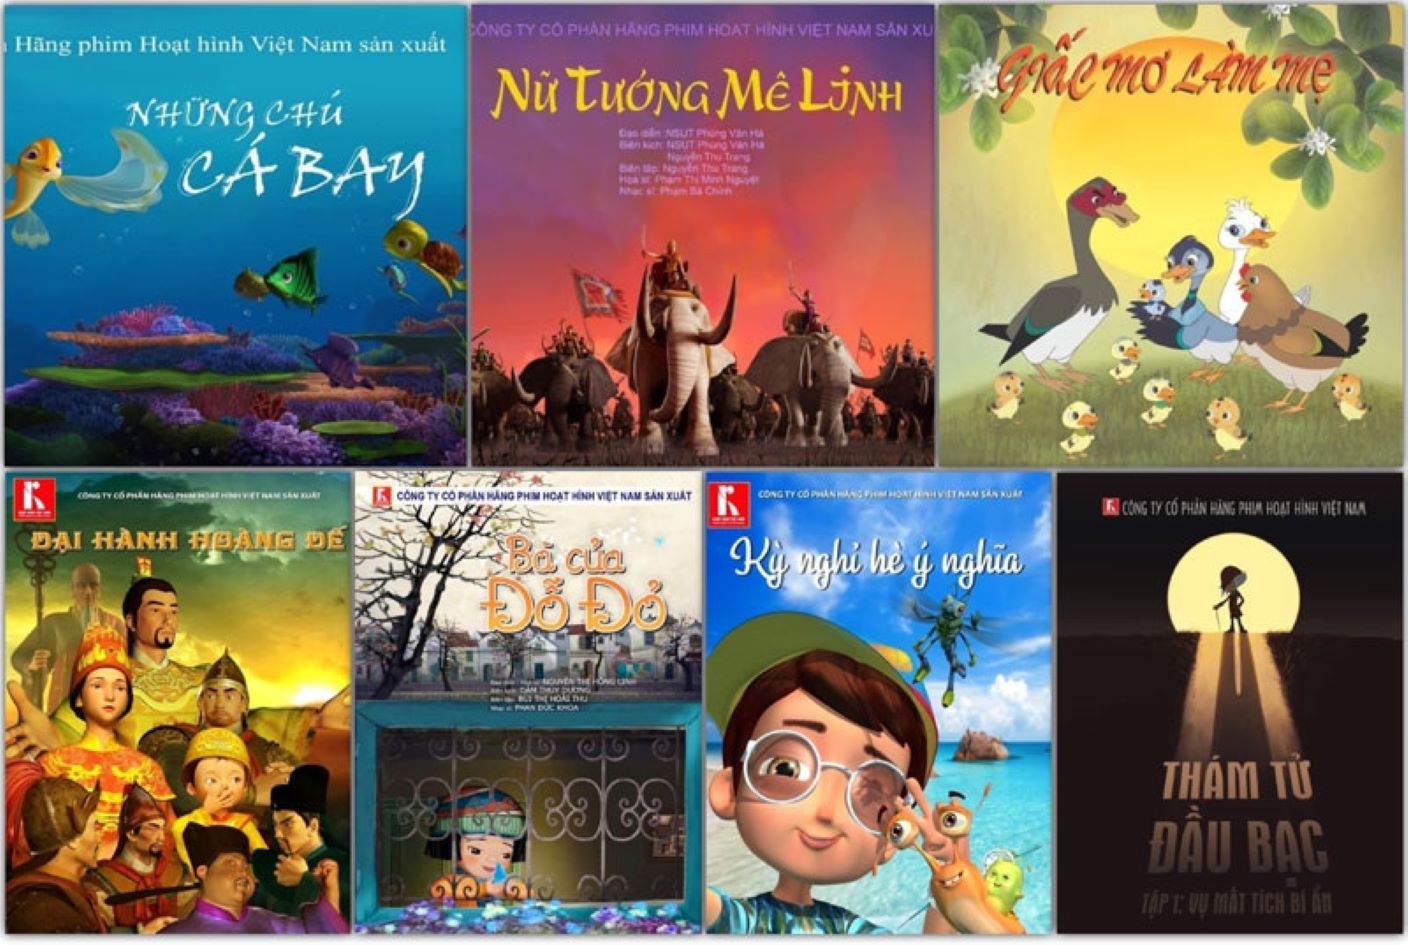 Thách thức để phim hoạt hình Việt trở thành ngành công nghiệp văn hoá